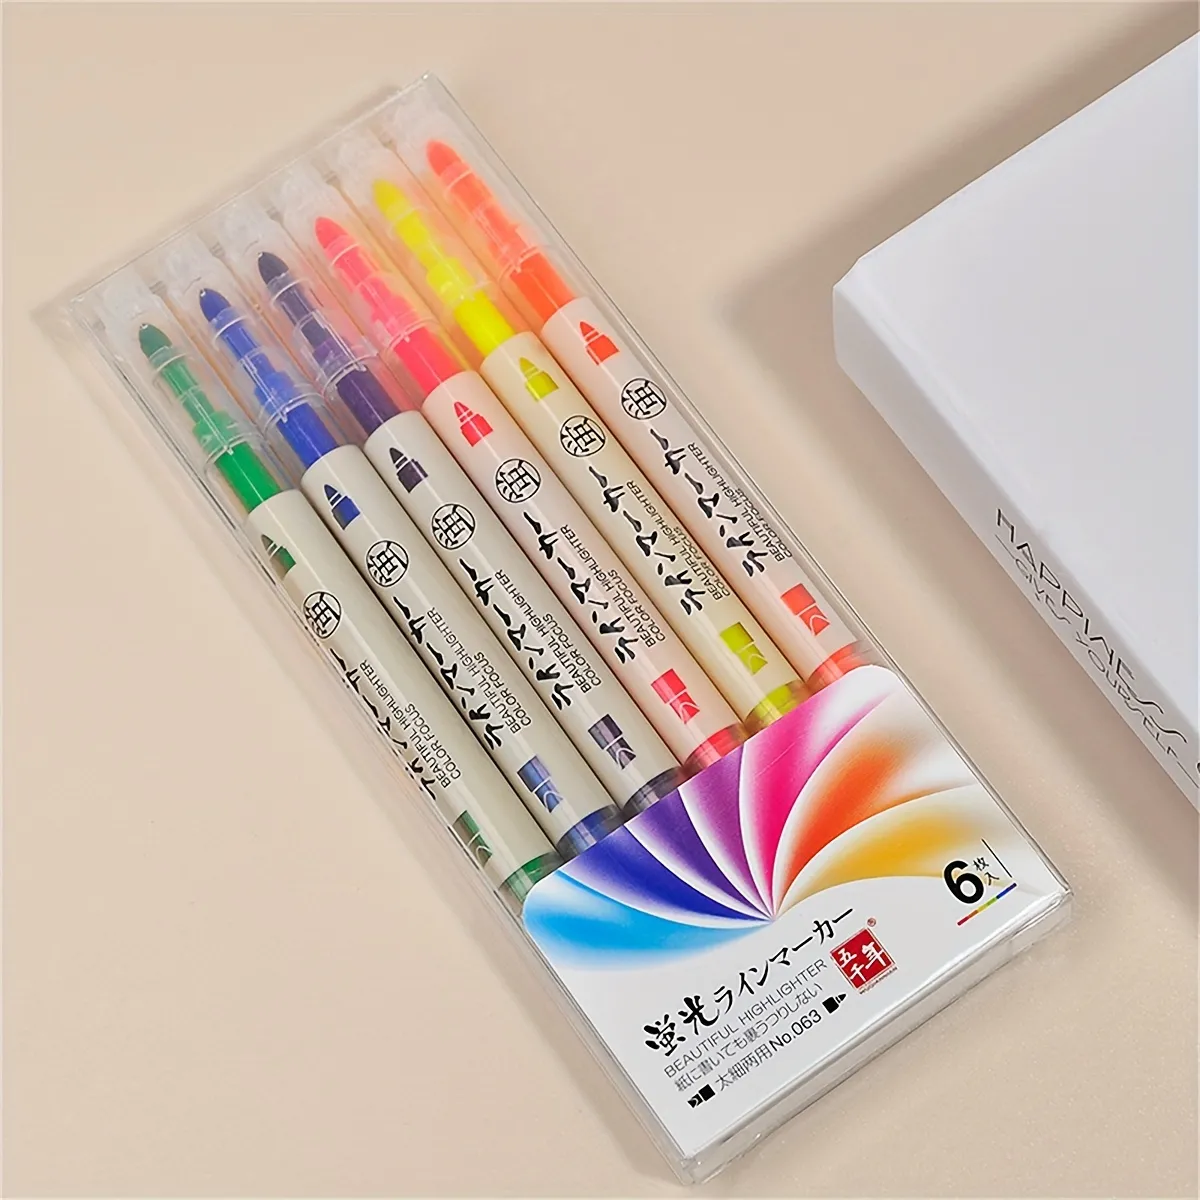 6本蛍光ペン、マーカー、両端ペンヘッド、さまざまな色、ライティングマーカー 事務用品/学用品/ホリデーギフト 新規ユーザーへの無料配送  Temu Japan